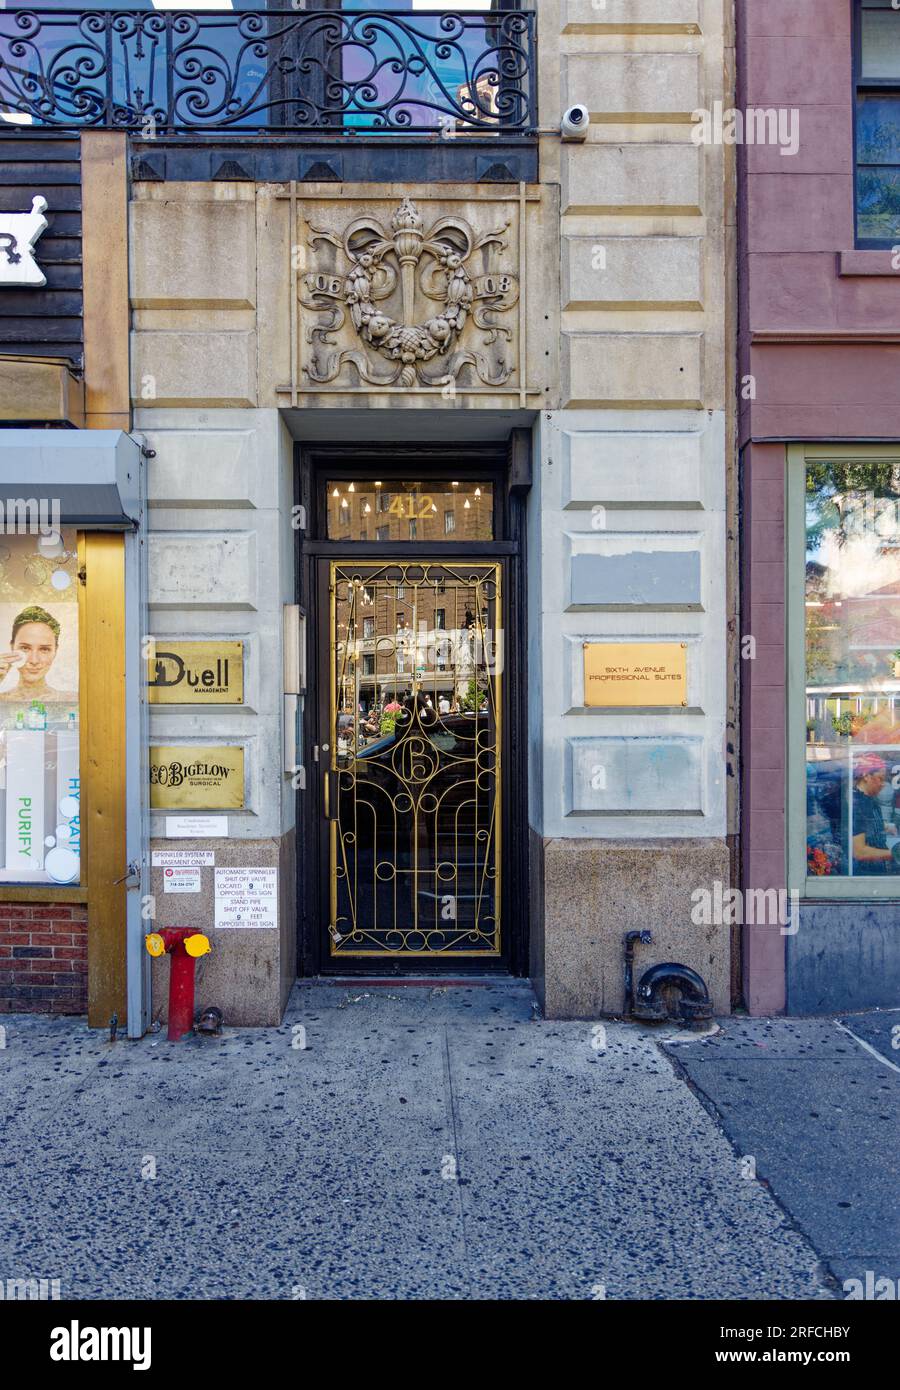 Punto di riferimento del Greenwich Village: I medici occupano ora gli uffici sopra la Bigelow Pharmacy al 412 della Sixth Avenue - seguire la freccia al neon. Foto Stock